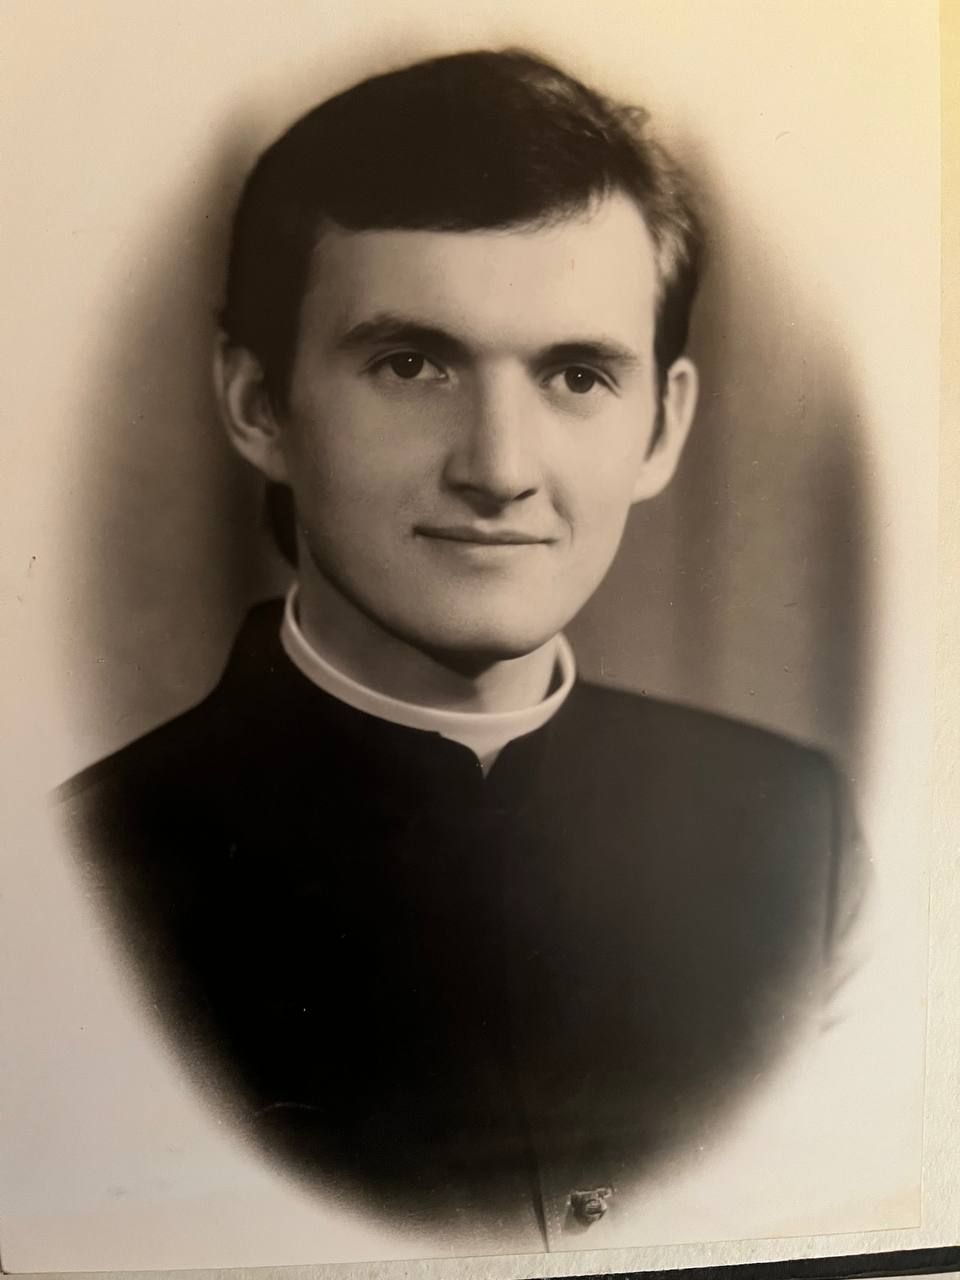 1996 р., закінчення навчання в Івано-Франківському катехитично-теологічному духовному інституті